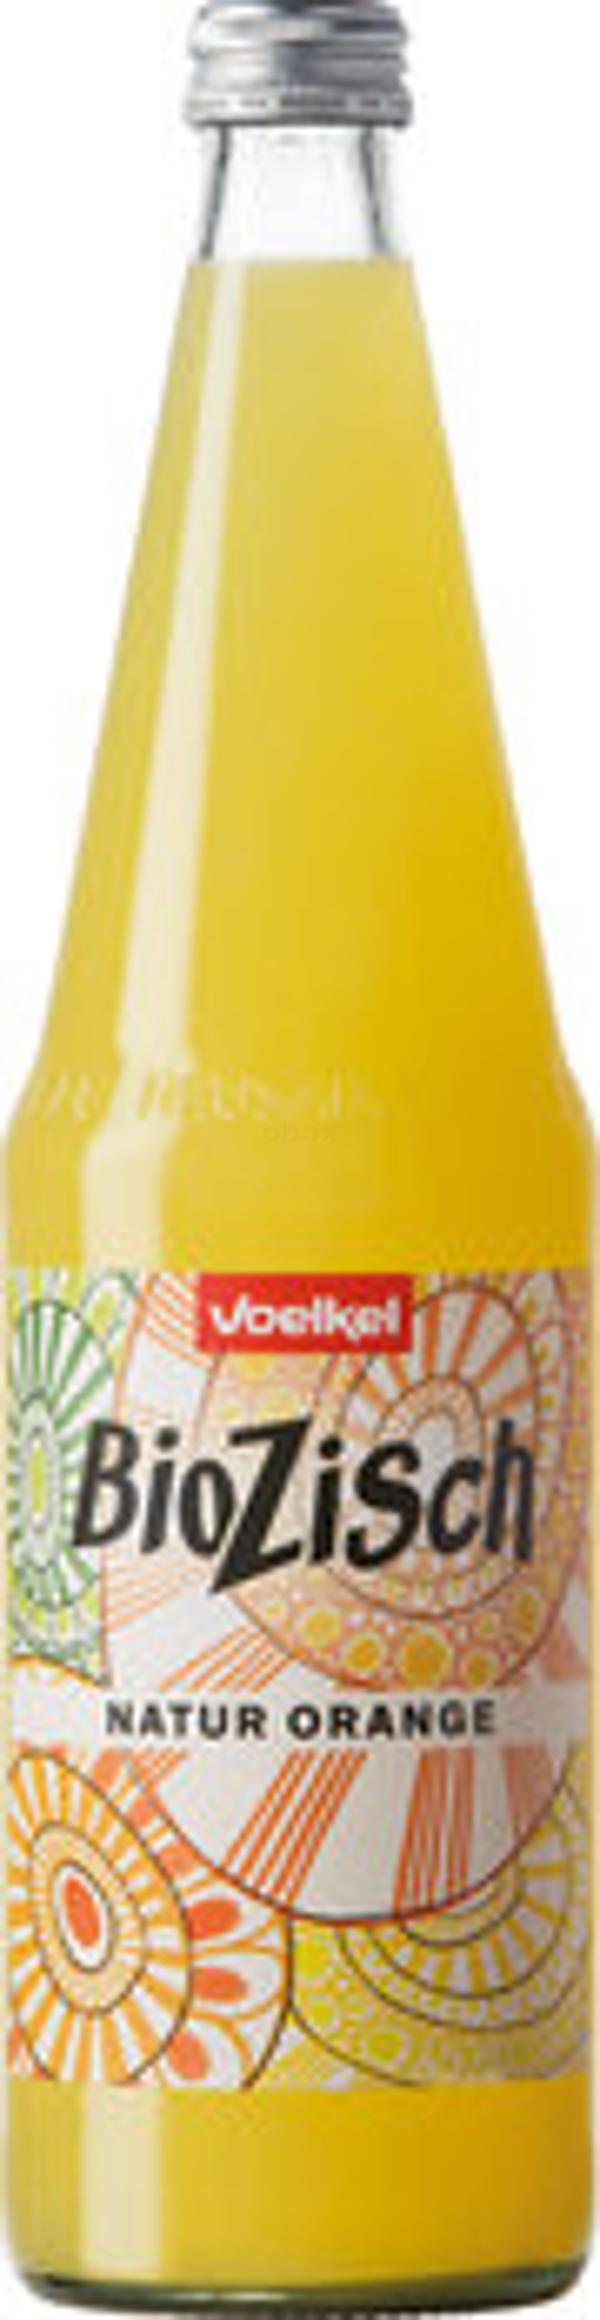 Produktfoto zu BioZisch Natur Orange Kiste 6*0,7L